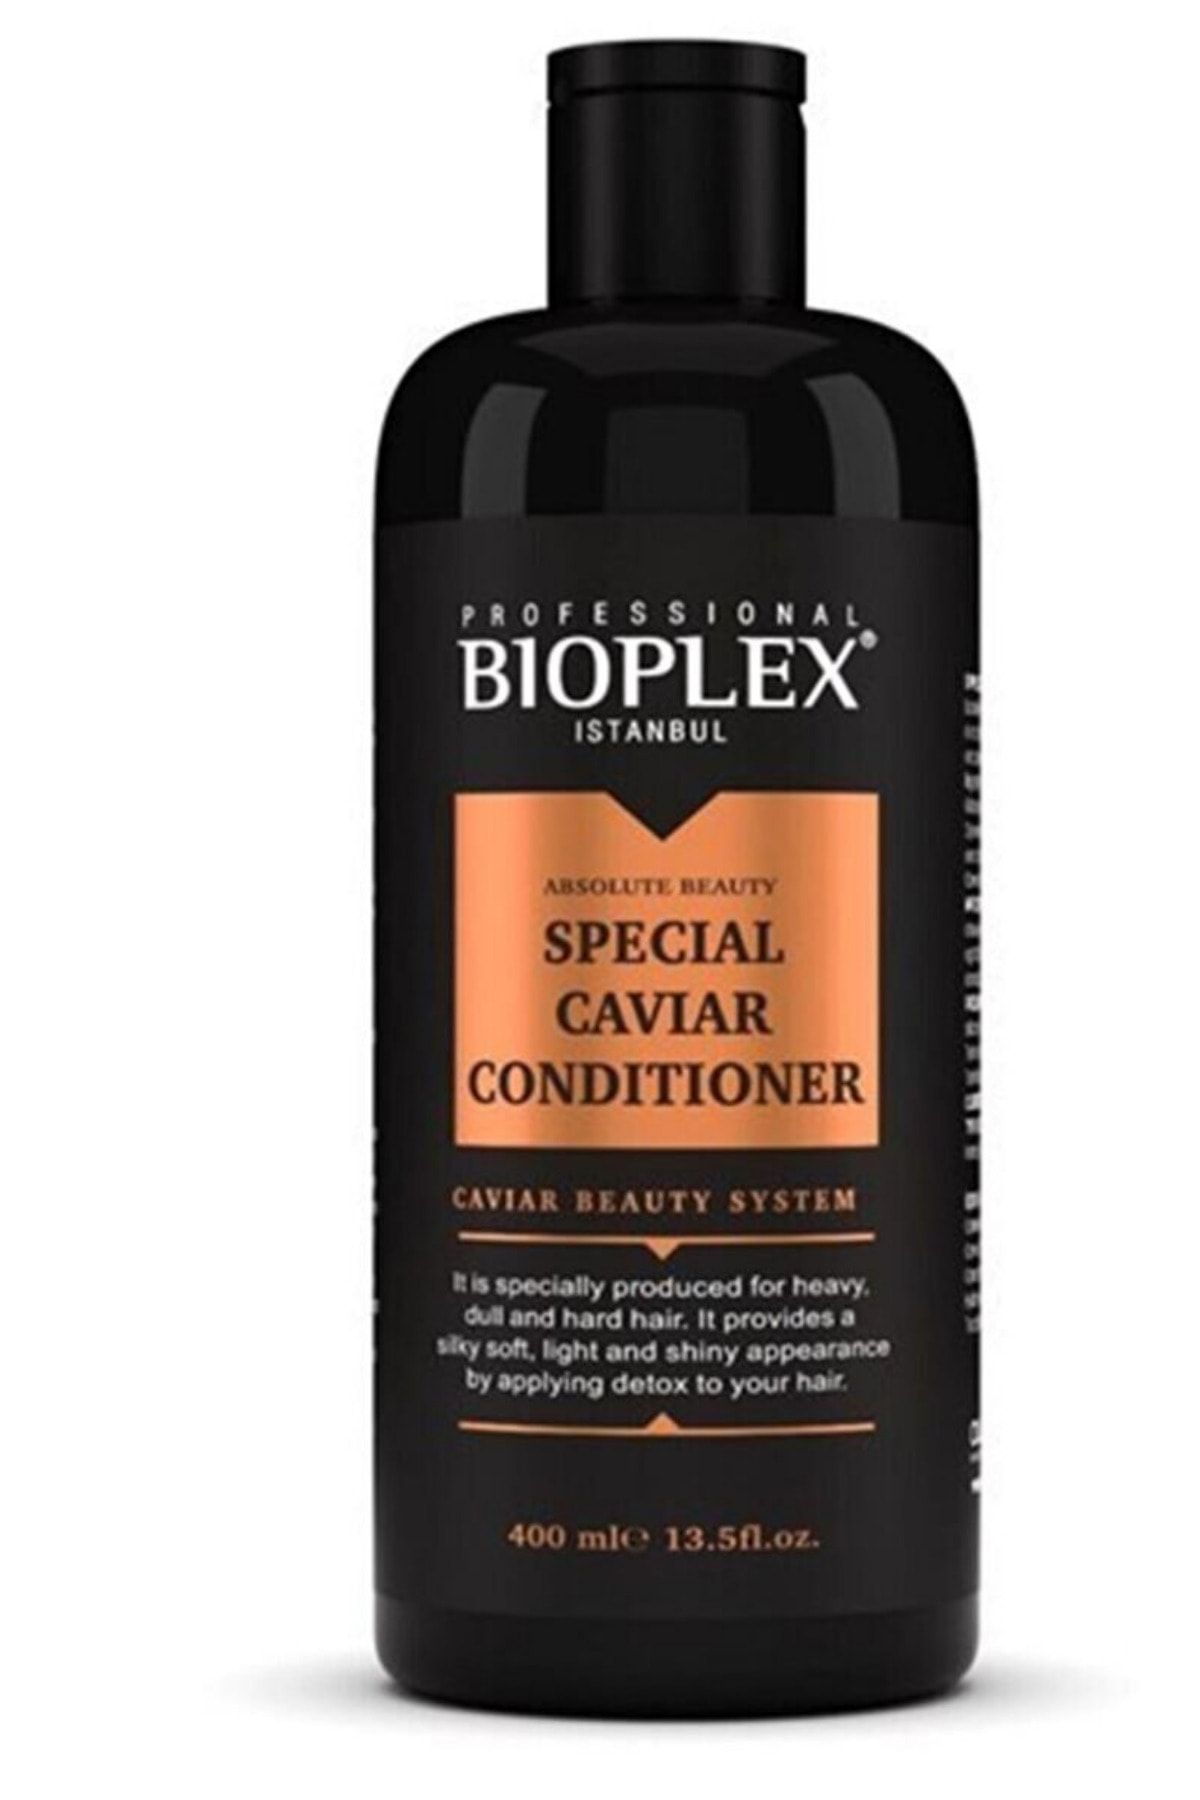 bioplex professional istanbul Havyar Onarıcı Saç Bakım Kremi / Caviar Conditioner 400 Ml - Özel Formüllü Saç Bakım Kremi